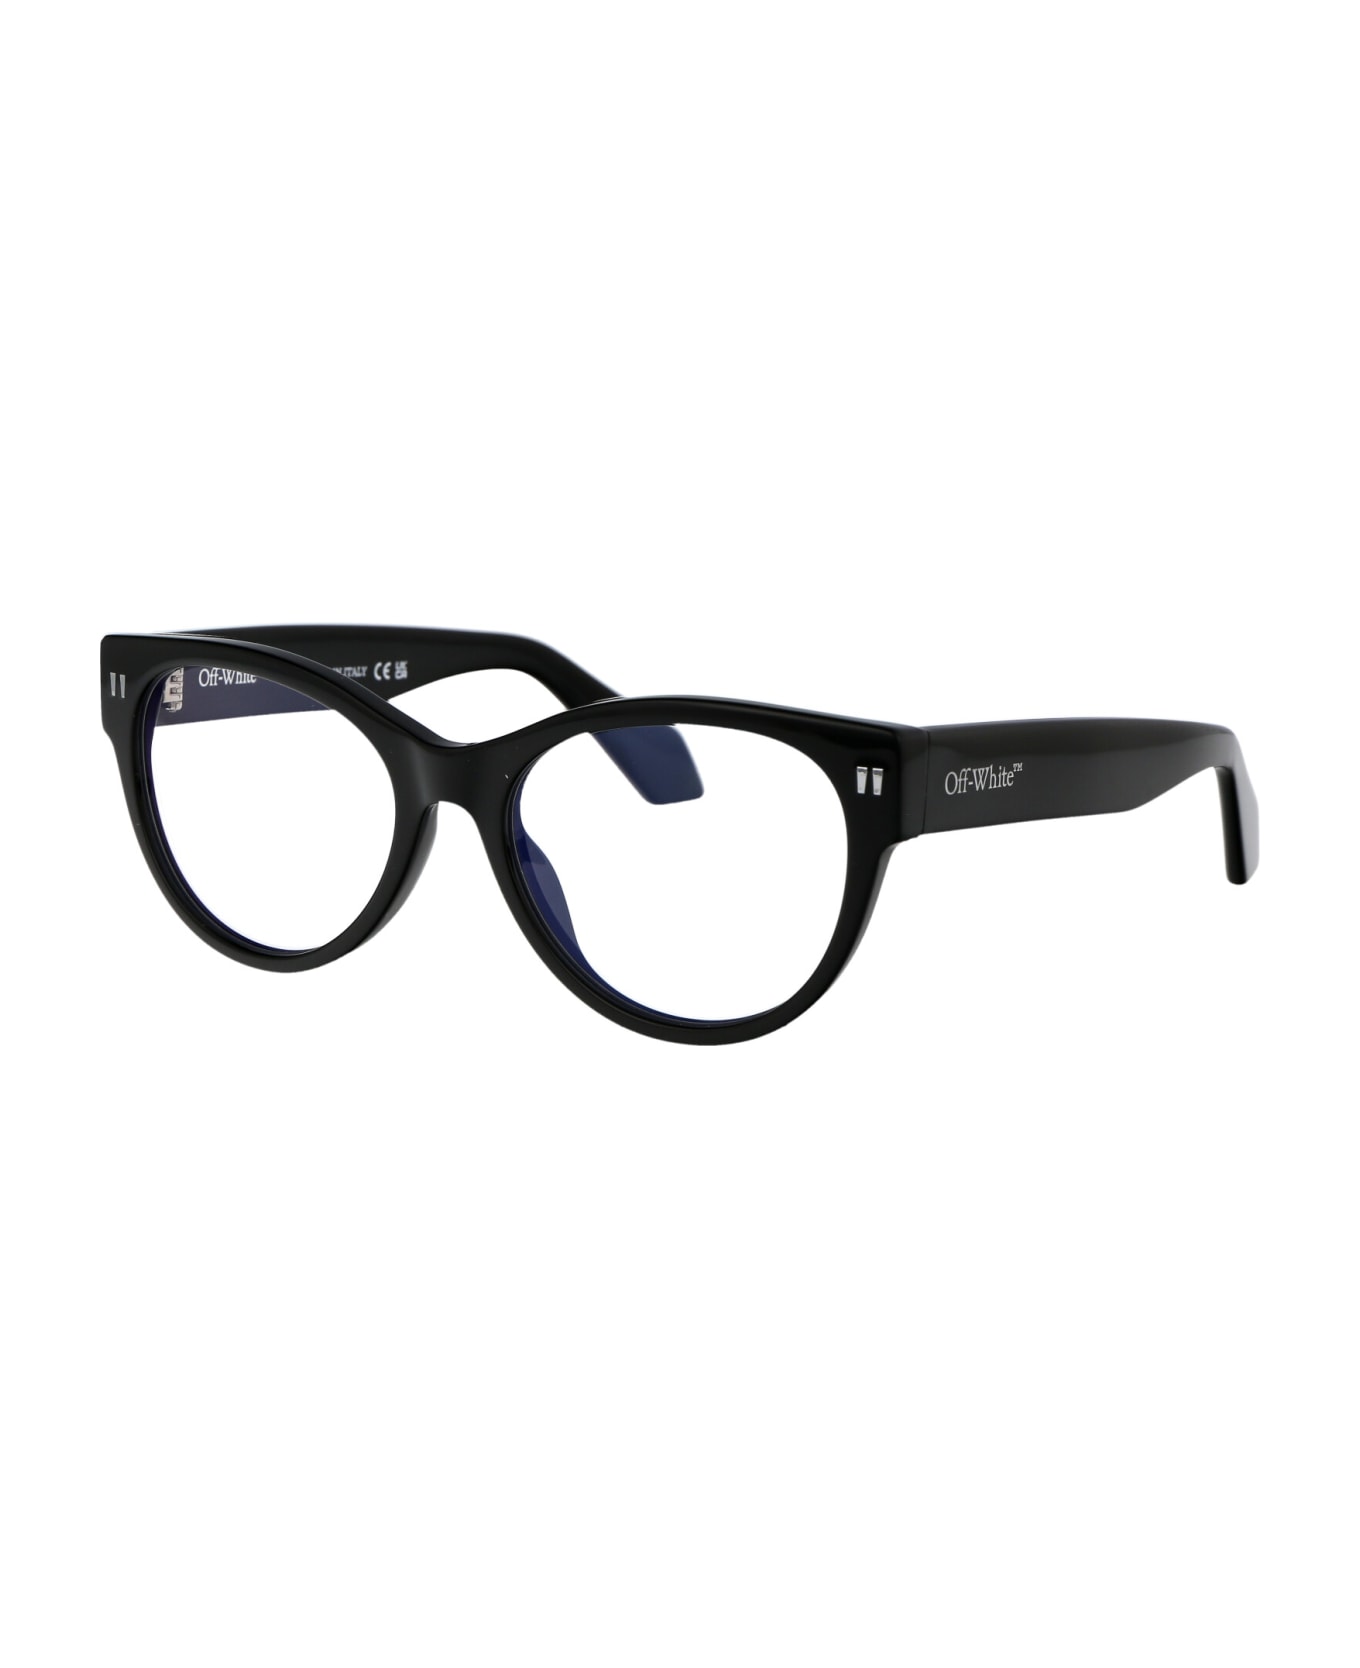 Off-White Optical Style 57 Glasses - 1000 BLACK アイウェア